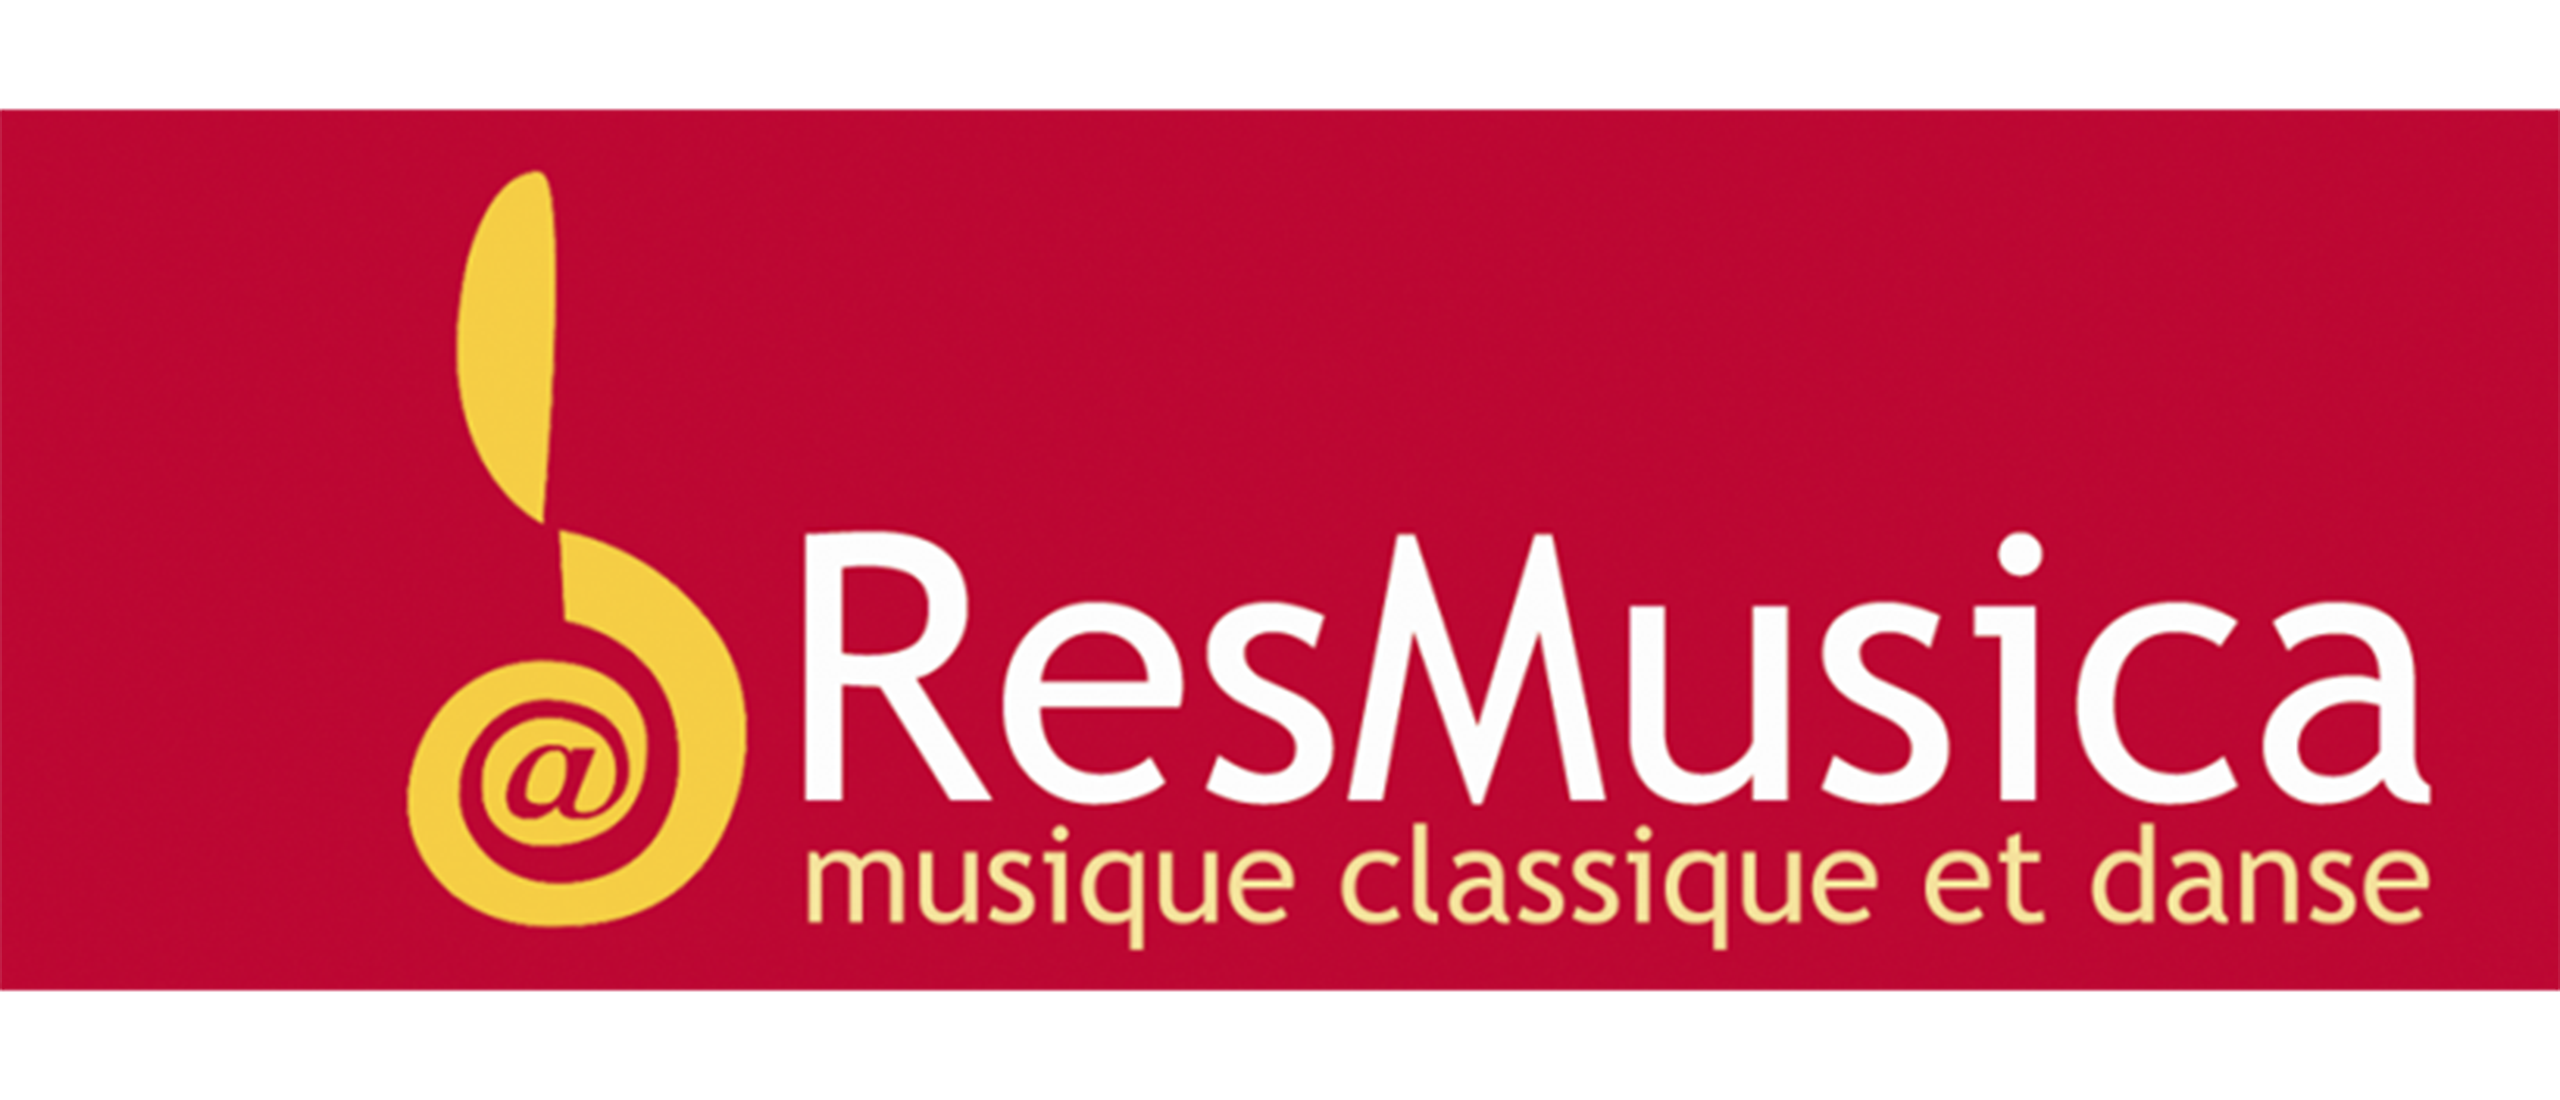 ResMusica logo award